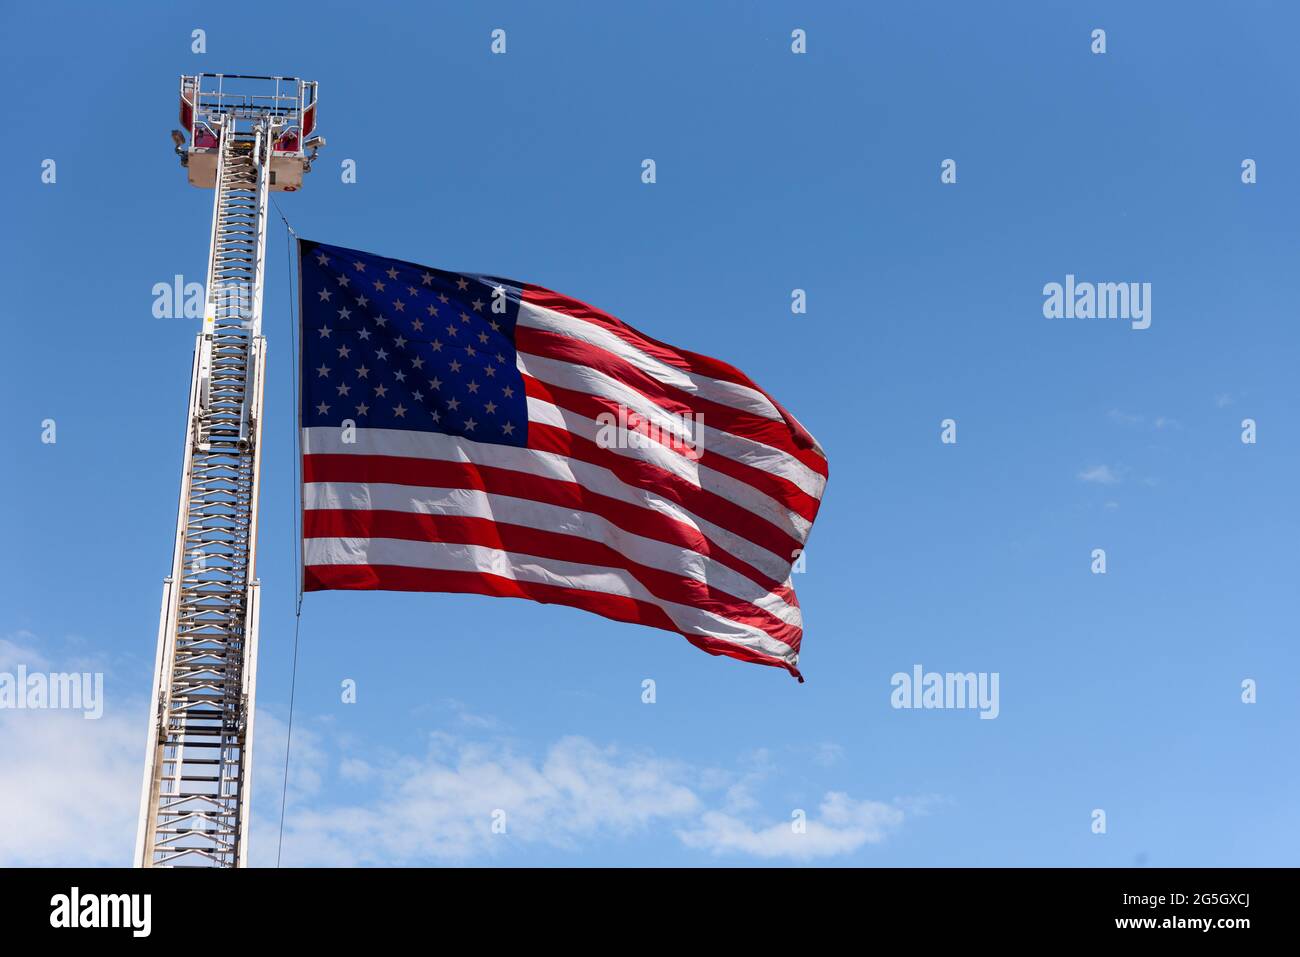 Eine große US-Flagge, ein Symbol für Freiheit und Freiheit, fliegt im Wind, befestigt an einer hoch aufragenden Feuerwehrleiter. Stockfoto